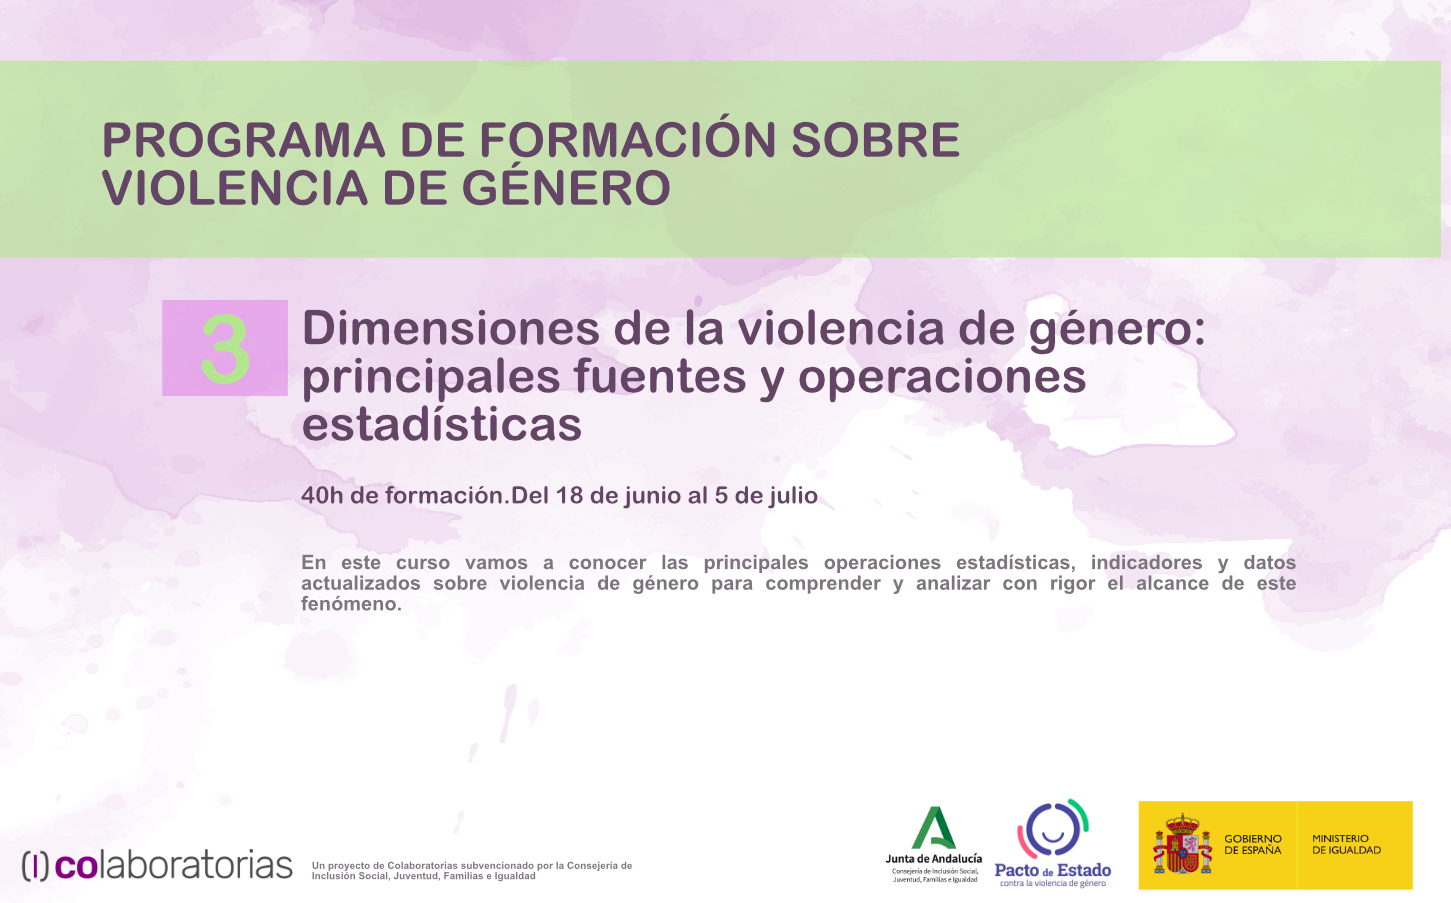 Dimensiones de la violencia de género: principales fuentes y operaciones estadísticas